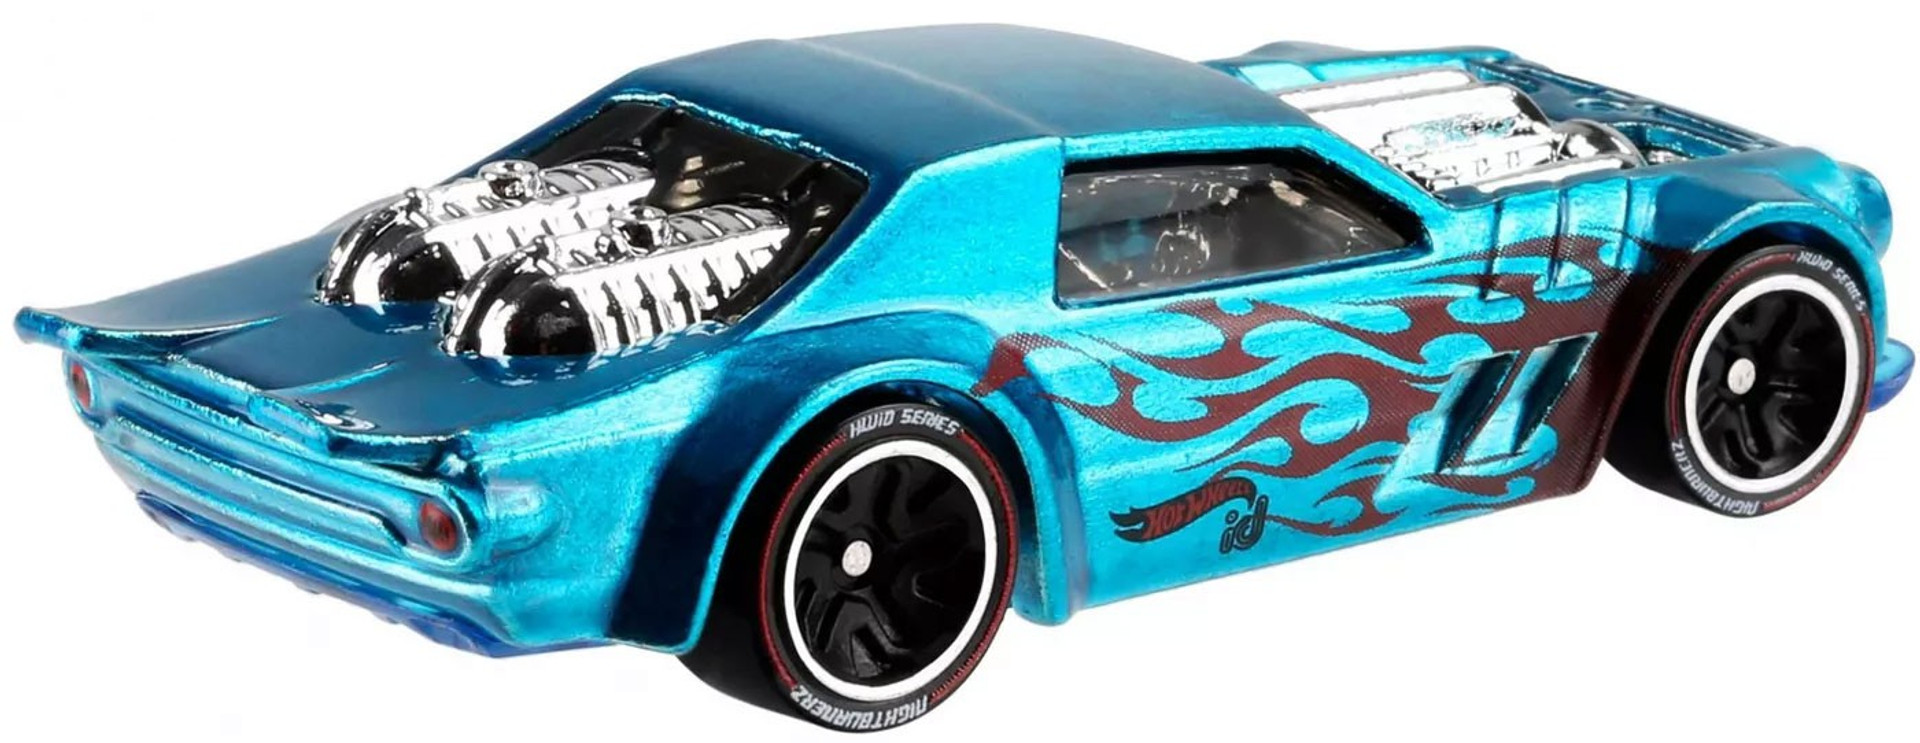 Hot Wheels ID Night Shifter 164 Diecast Car Mattel Toys - ToyWiz